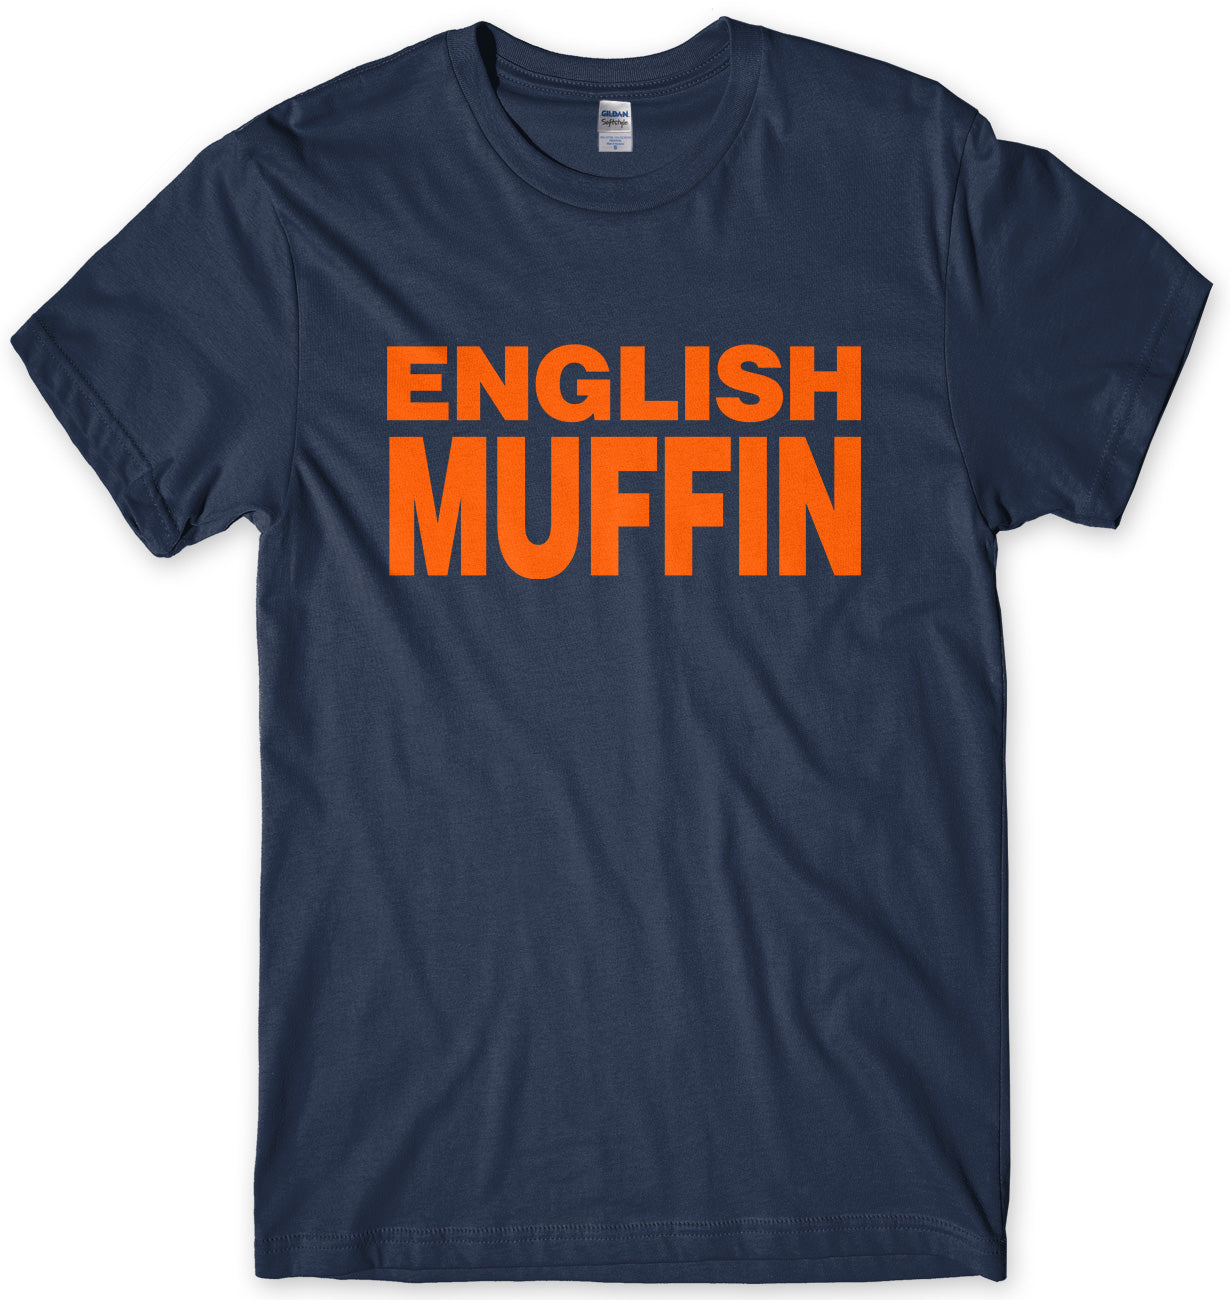 ENGLISH MUFFIN - AS WORN BY NIGELLA LAWSON MENS UNISEX T-SHIRT